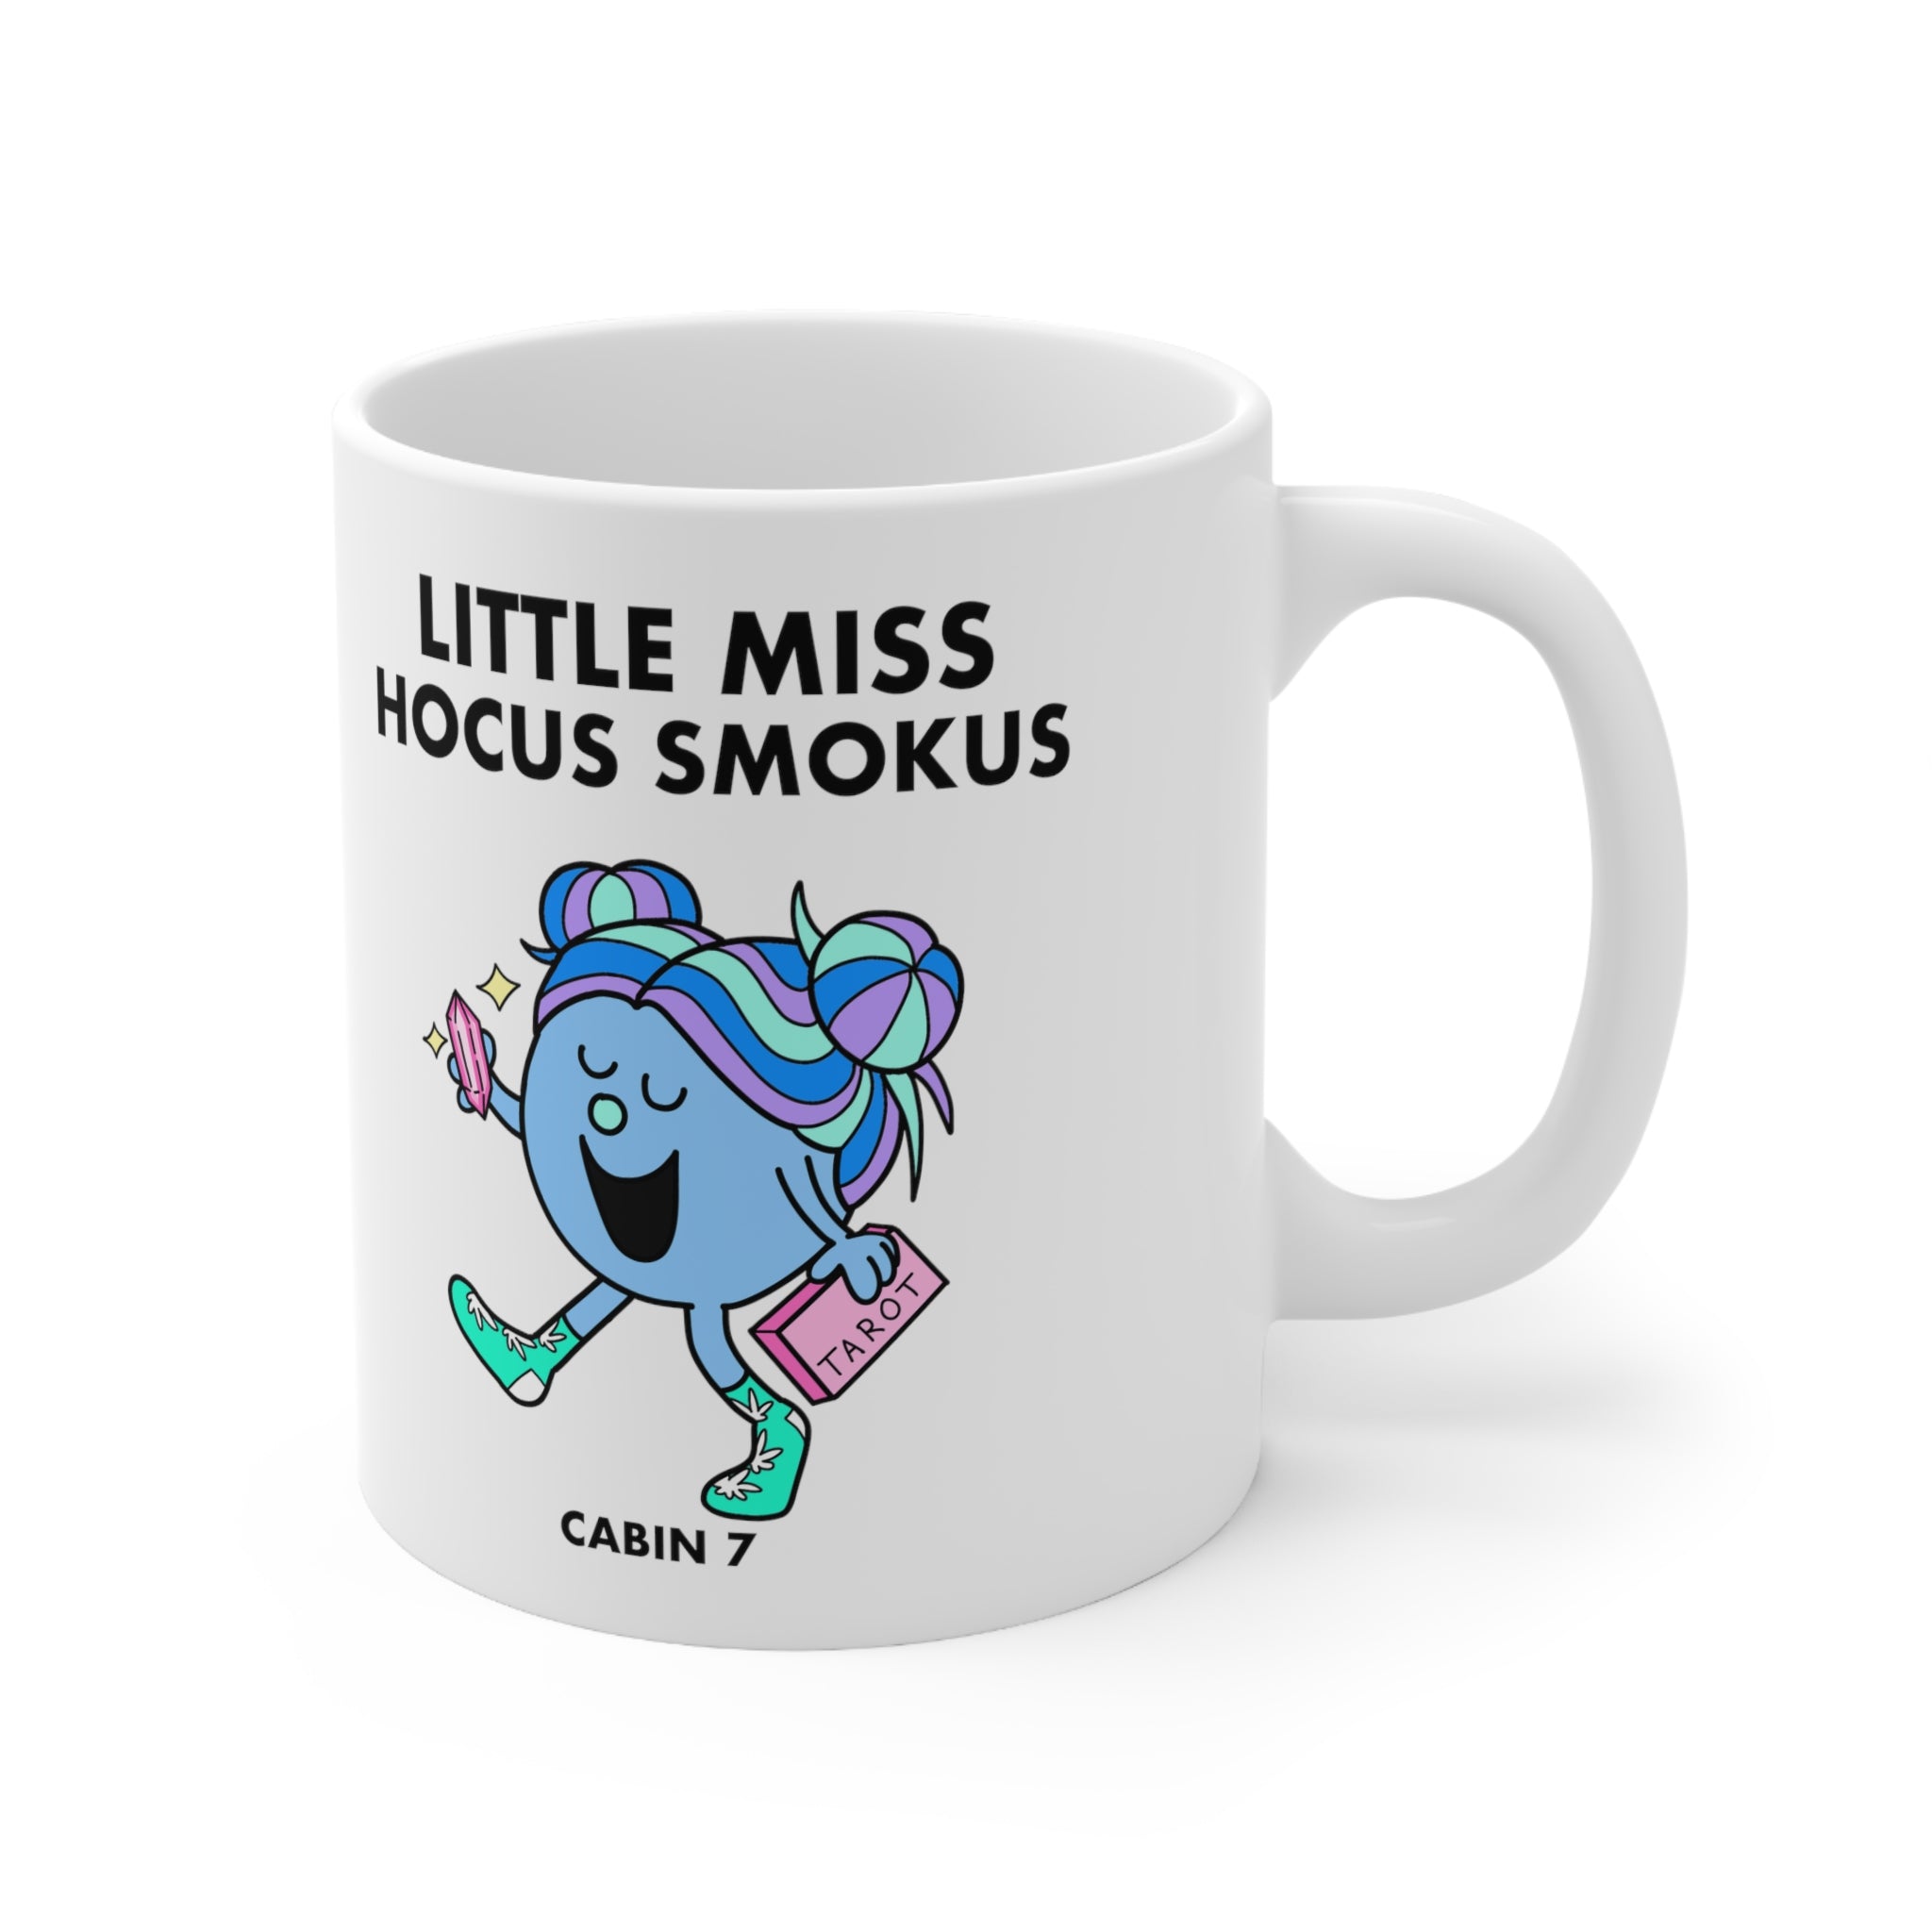 Little Miss Hocus Smokus Mug